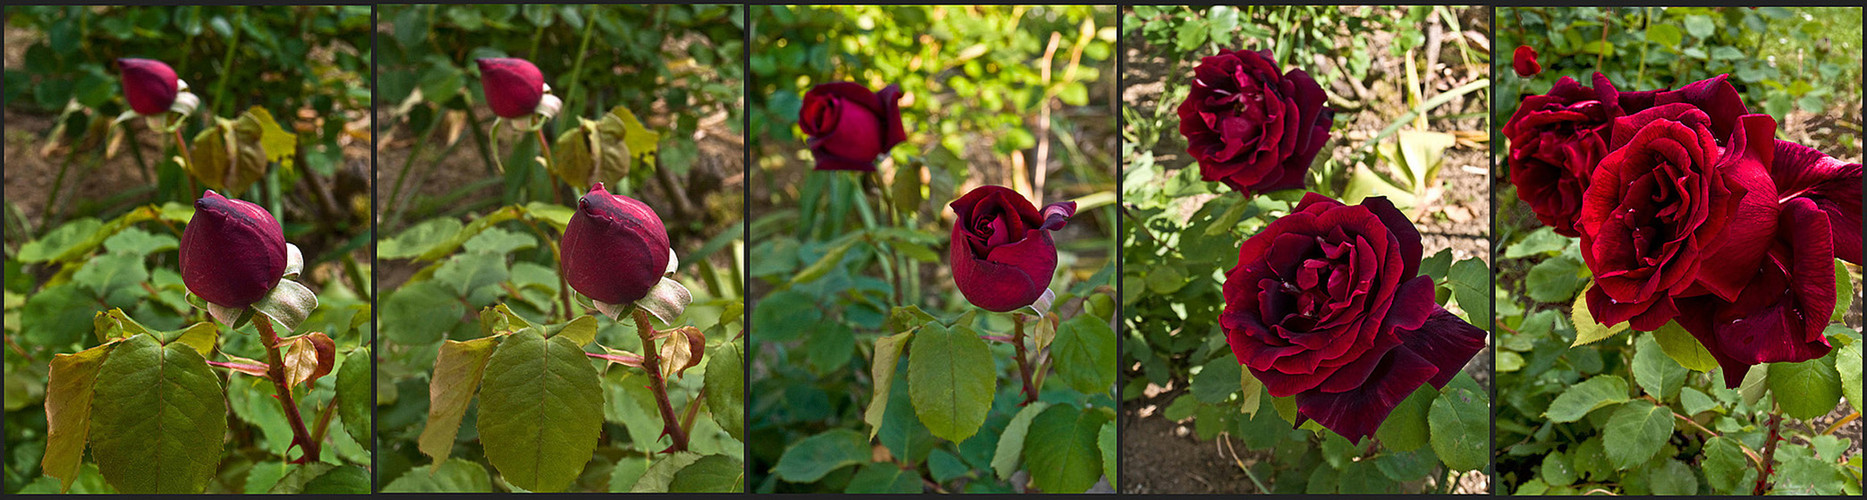 Quelques uns des plus beaux jours dans la vie des roses  